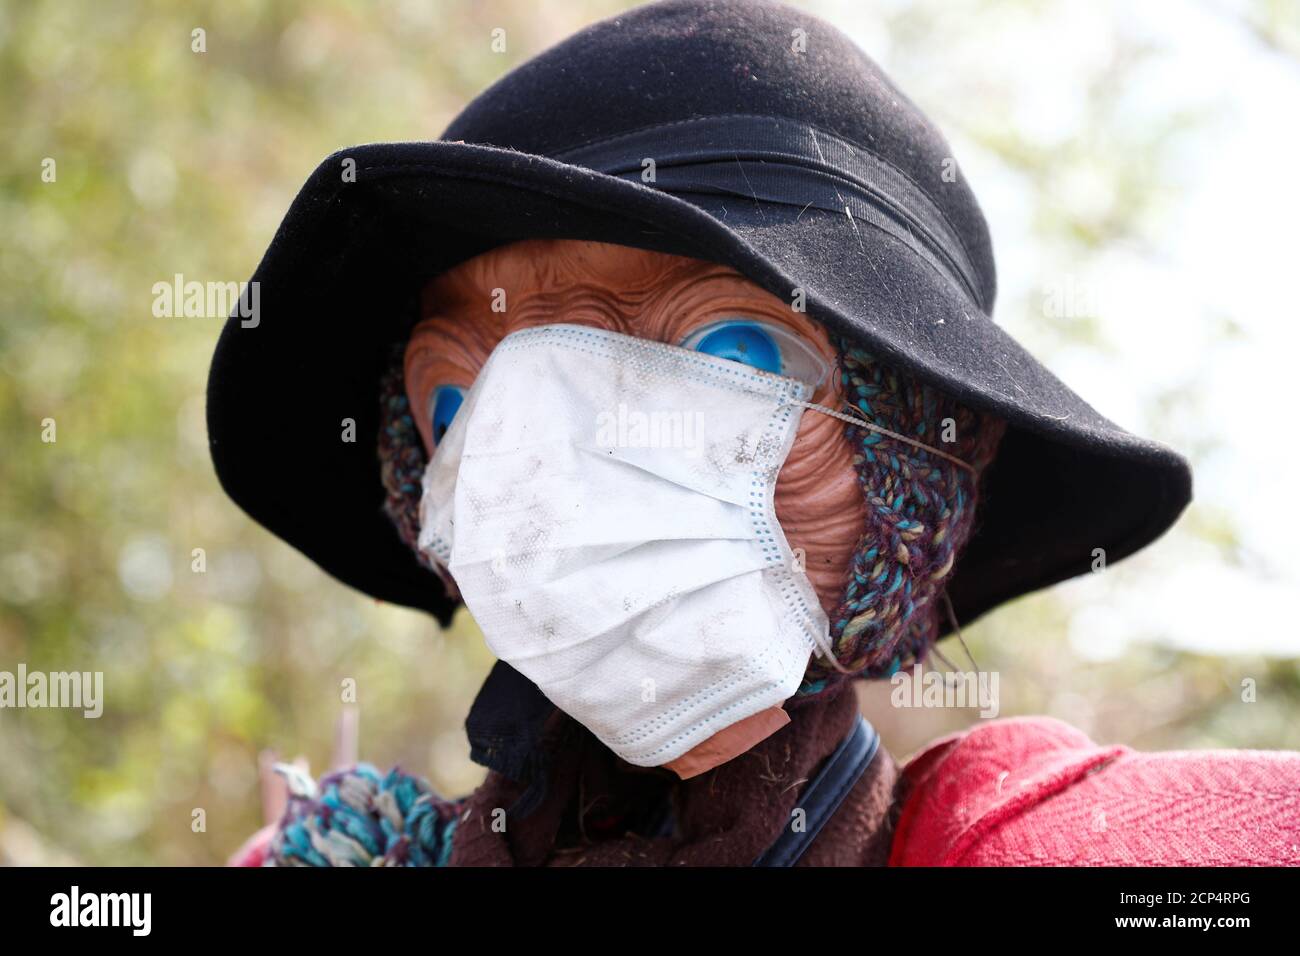 Uno scarrecrow che indossa una maschera protettiva è visto in un orto comunitario durante l'epidemia di coronavirus (COVID-19) a Bruxelles, Belgio, 12 aprile 2020. REUTERS/Francois Lenoir Foto Stock